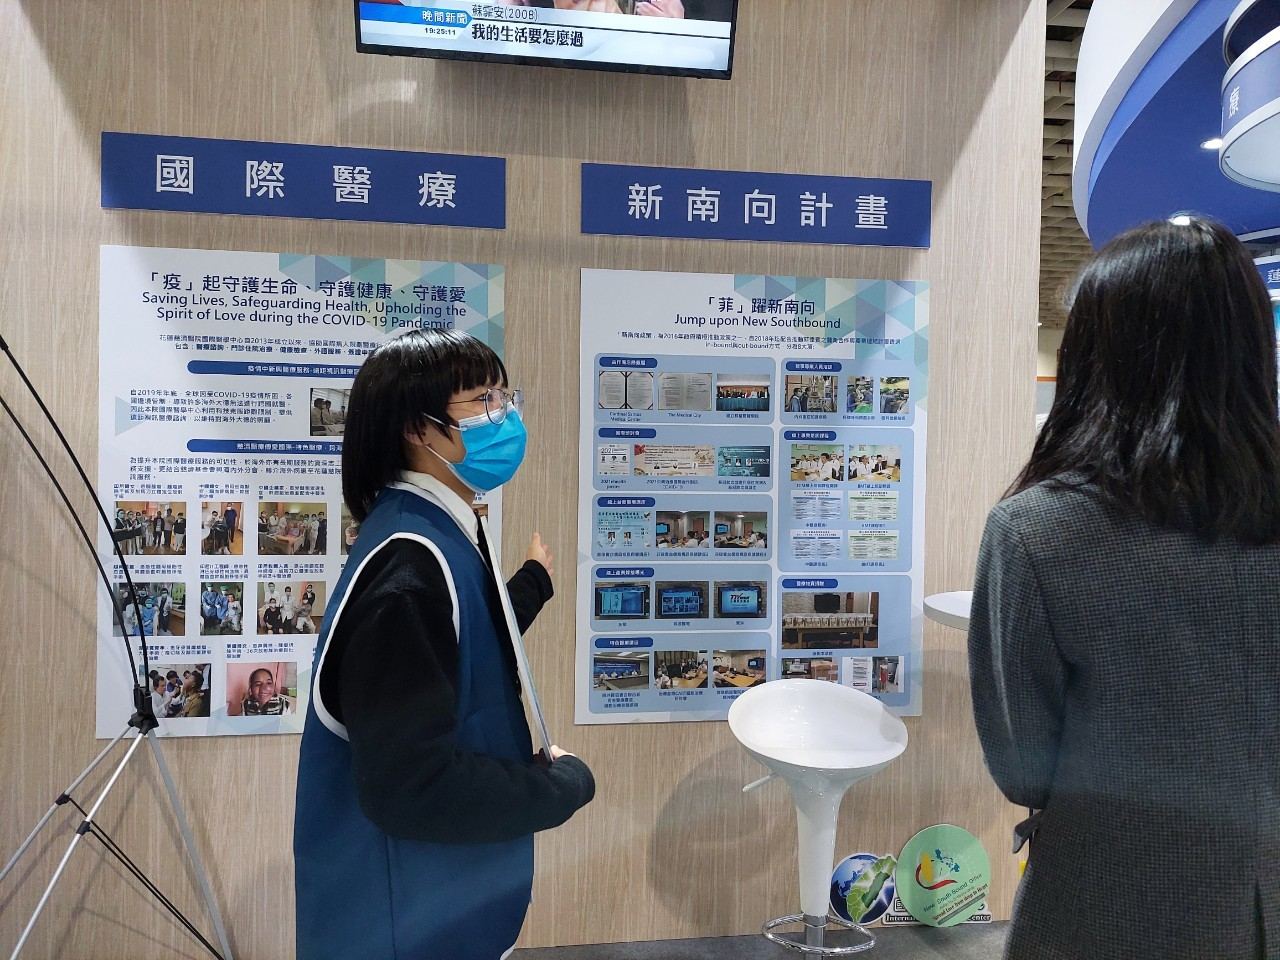 2021/12/02(四)~2021/12/05(日) 台灣醫療科技展，花蓮慈濟醫院國際醫學中心組員於現場導覽。